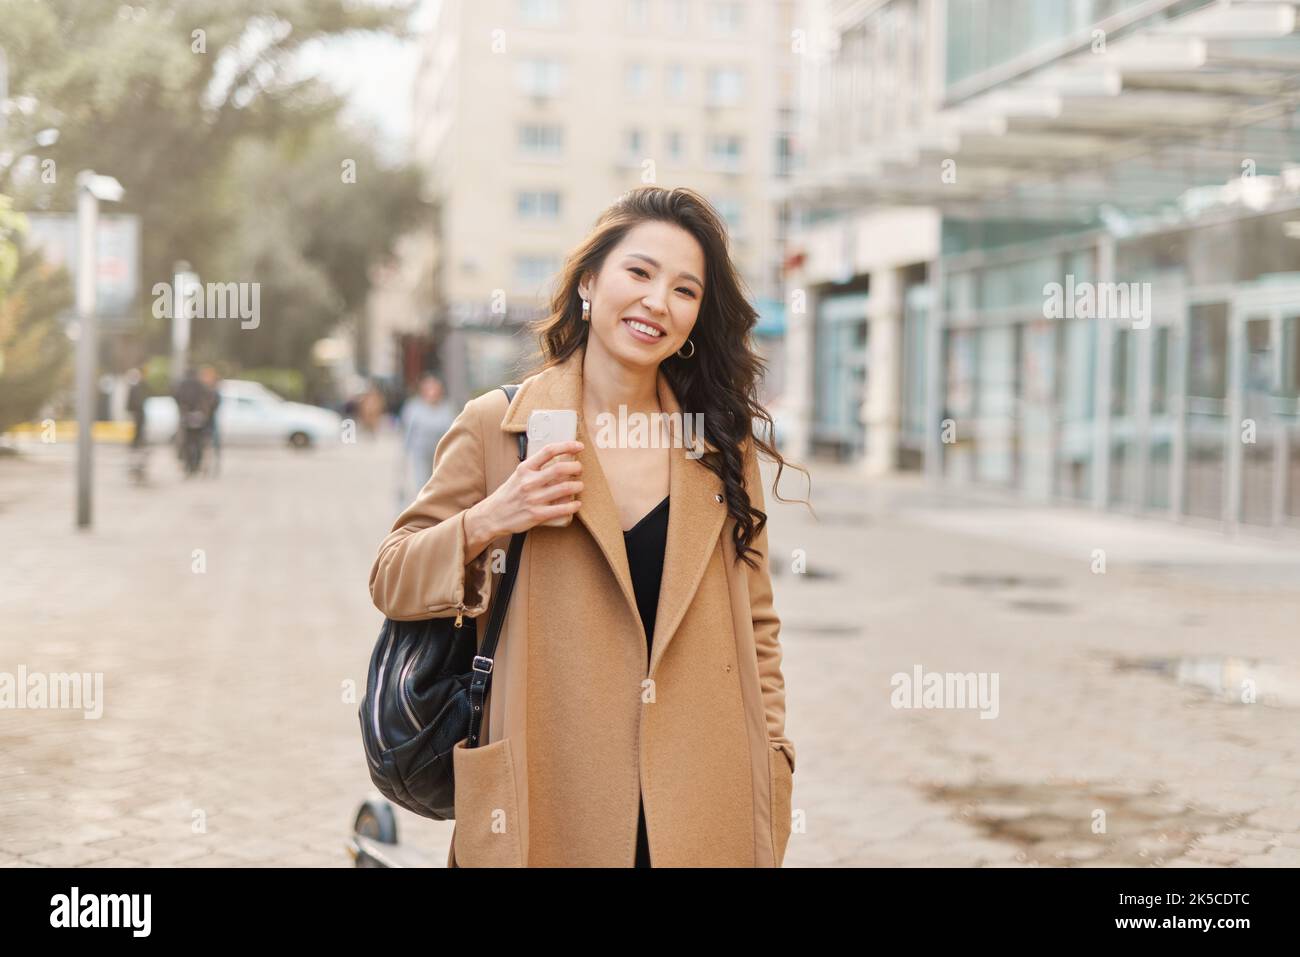 Lifestyle-Porträt hübsche asiatische kasachische Frau mit brillantem Lächeln auf der Straße Stockfoto